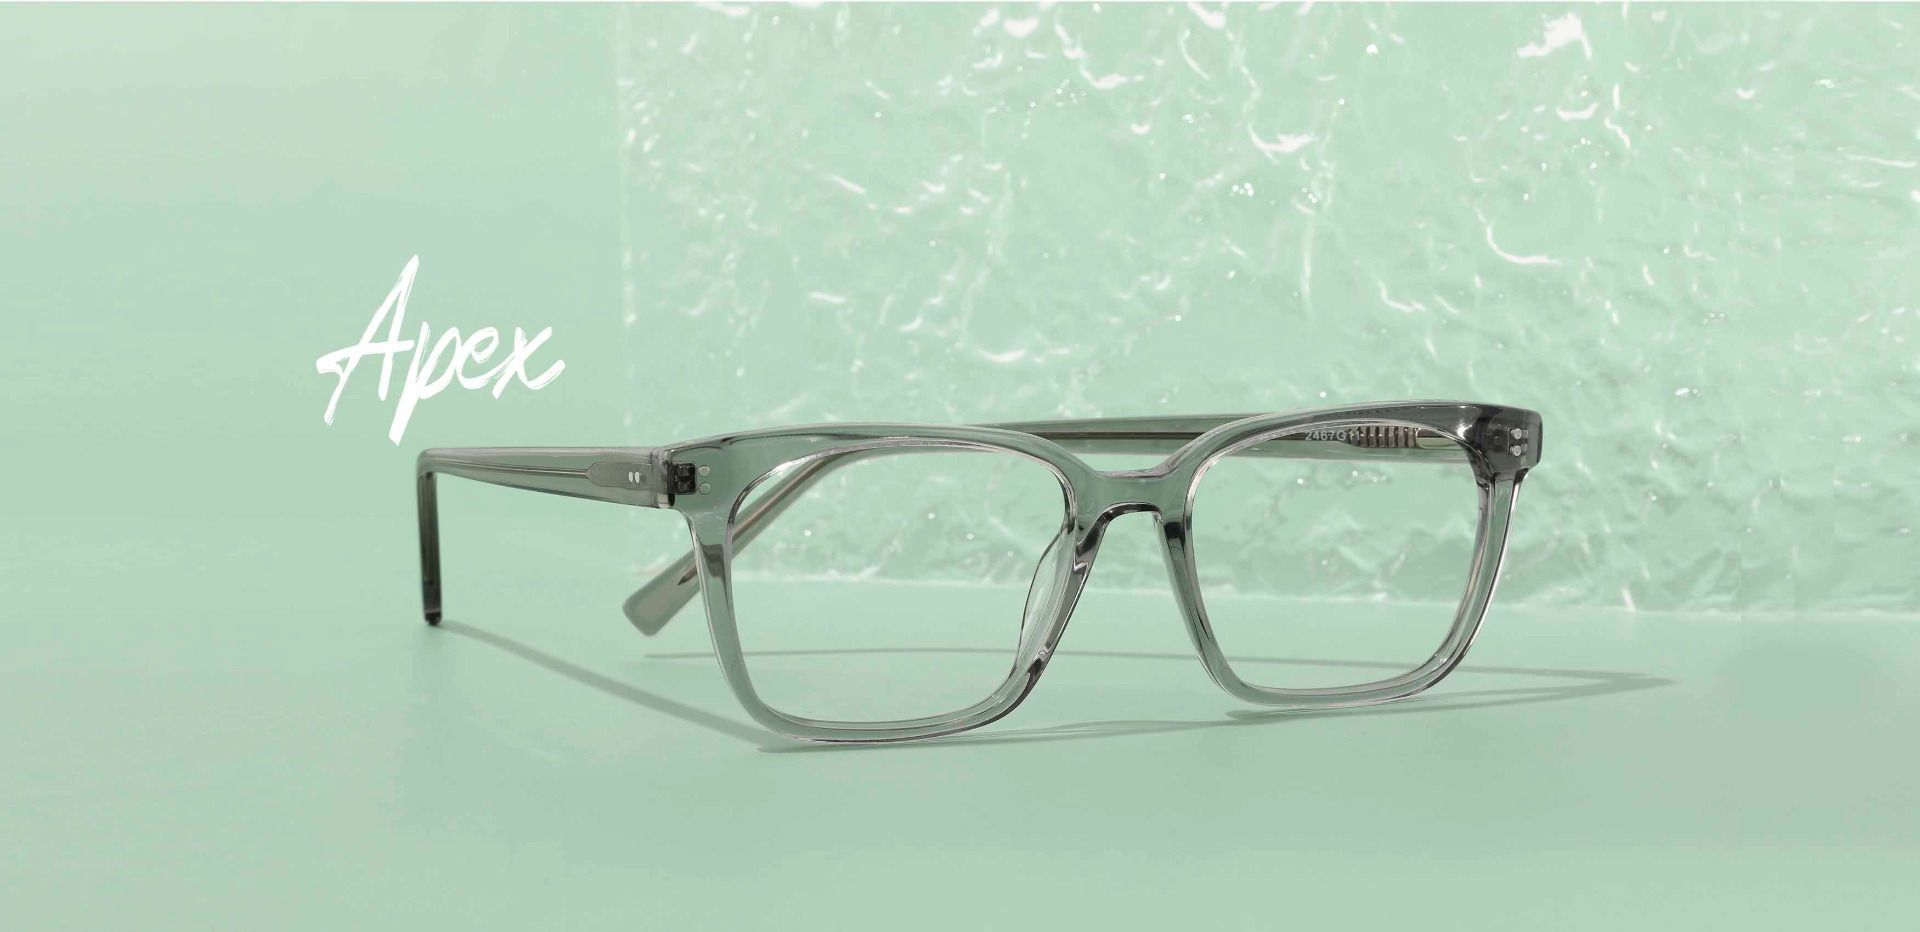 Apex Rectangle Prescription Glasses - Gray